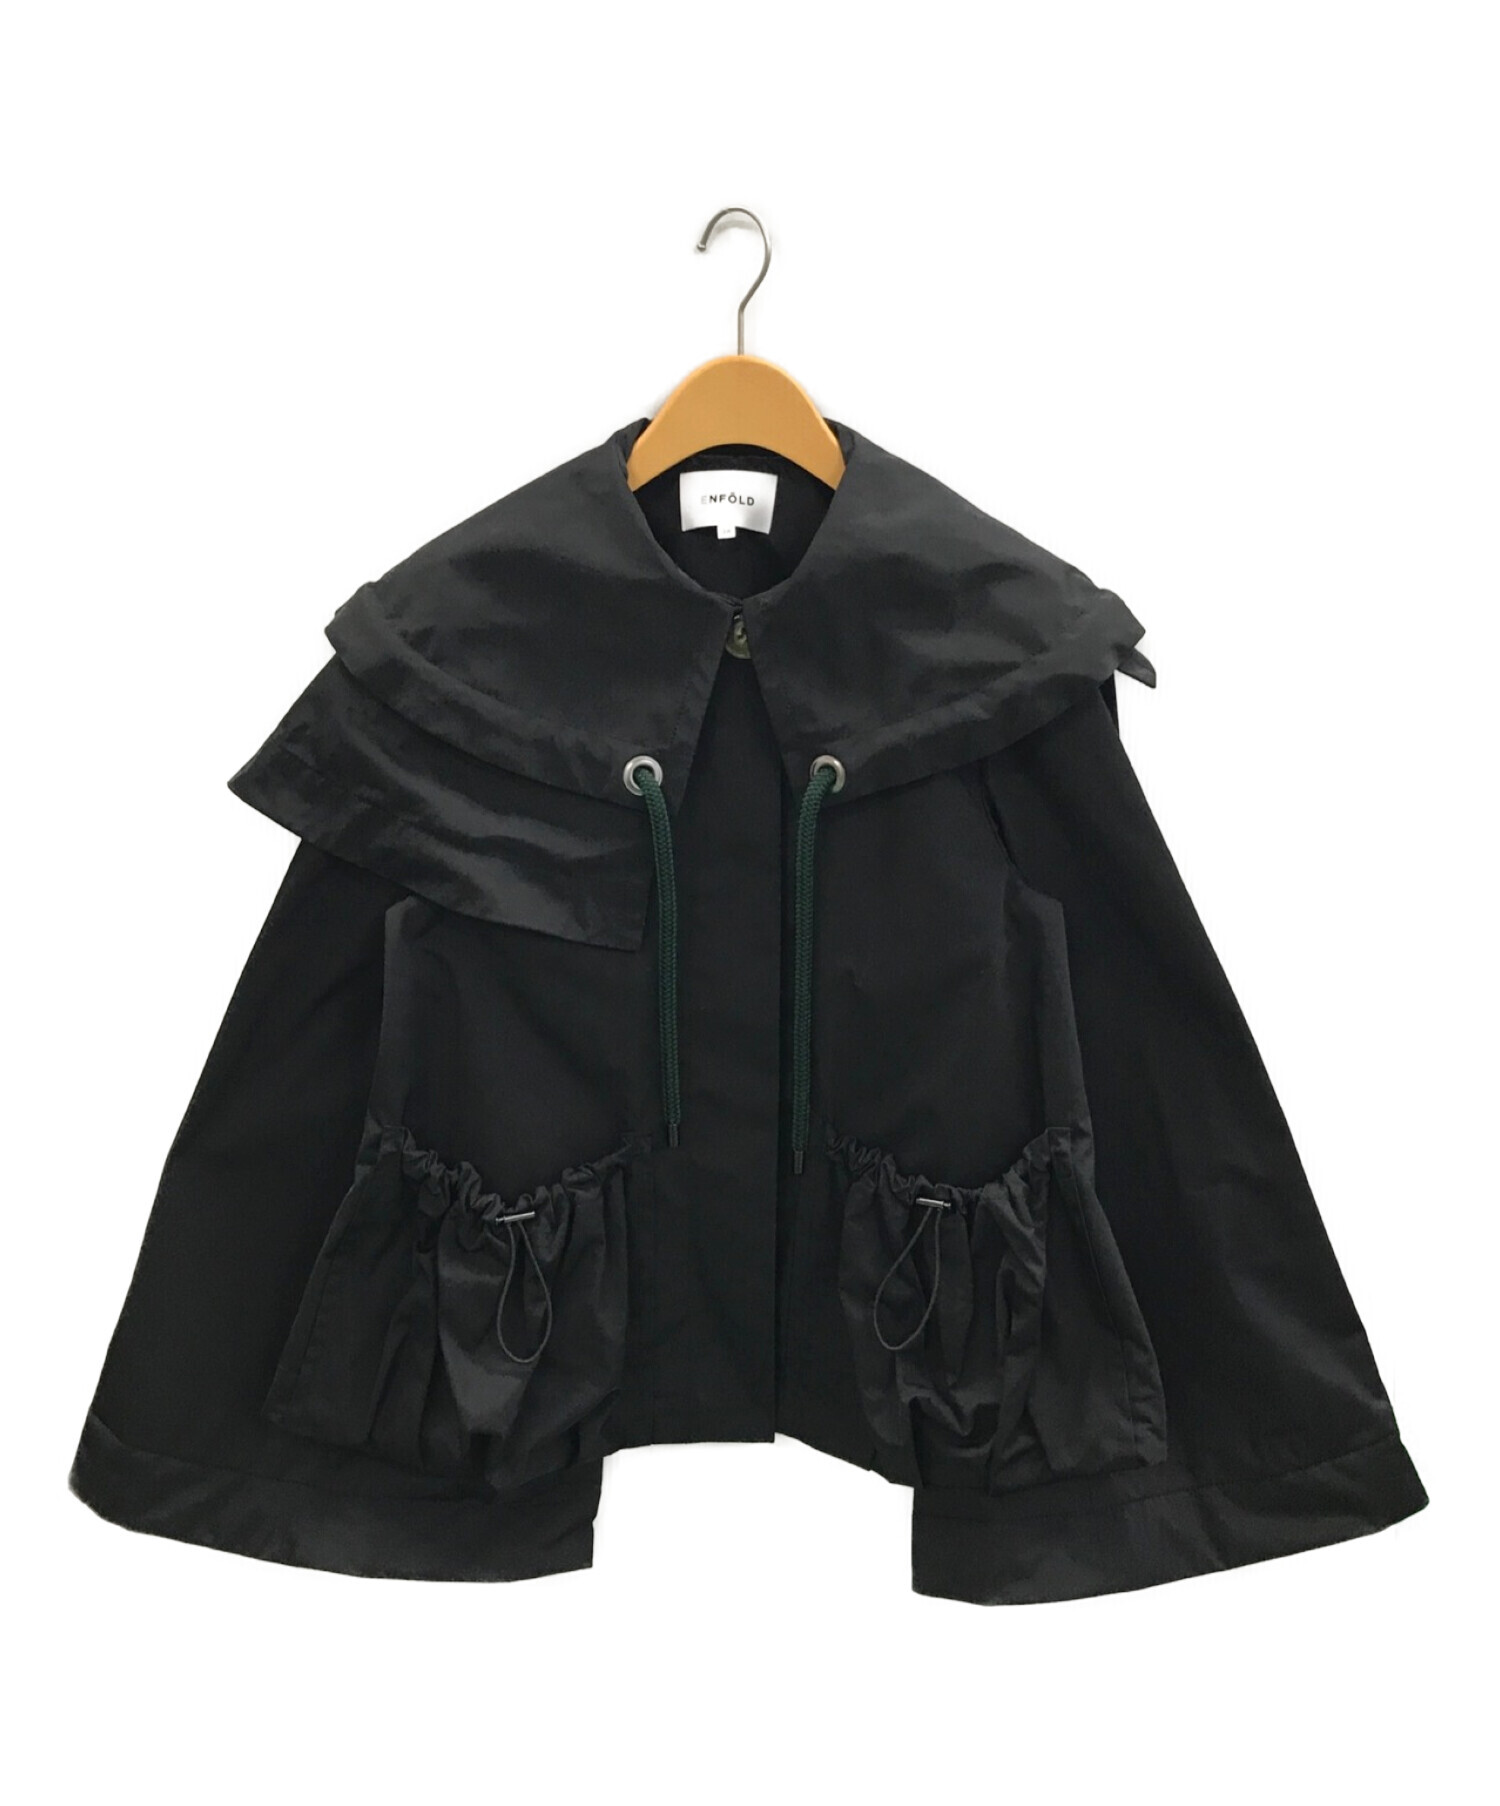 ENFOLD (エンフォルド) メモリーツイル ビッグカラーショートジャケット ブラック サイズ:38